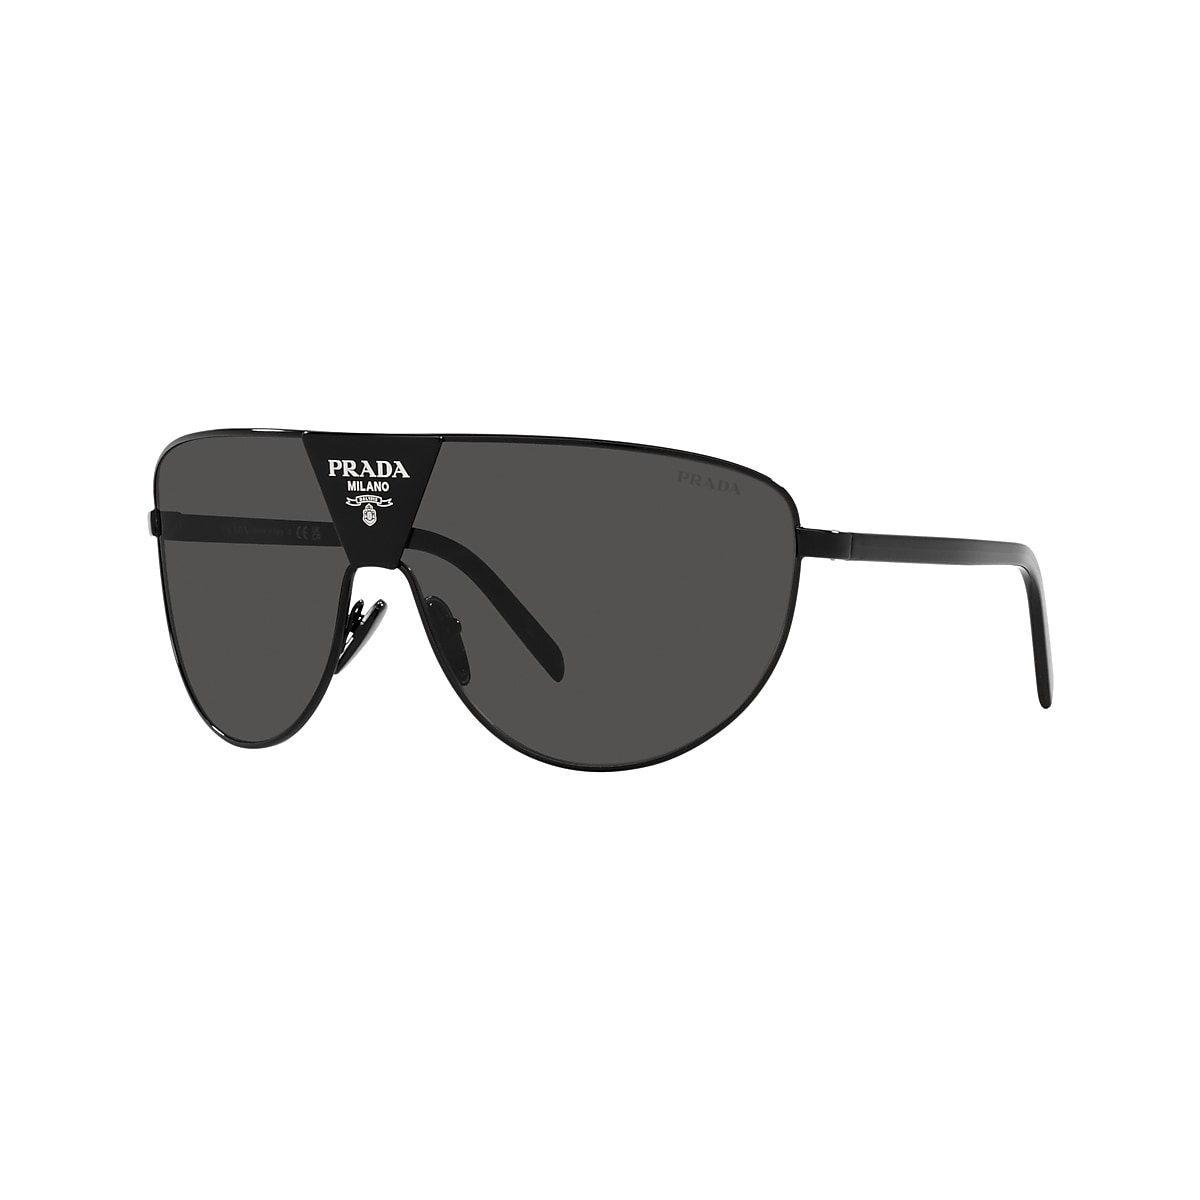 Prada PR 69ZS 0PR 69ZS 01 Dark Grey & Black Sunglasses | Sunglass Hut  United Kingdom